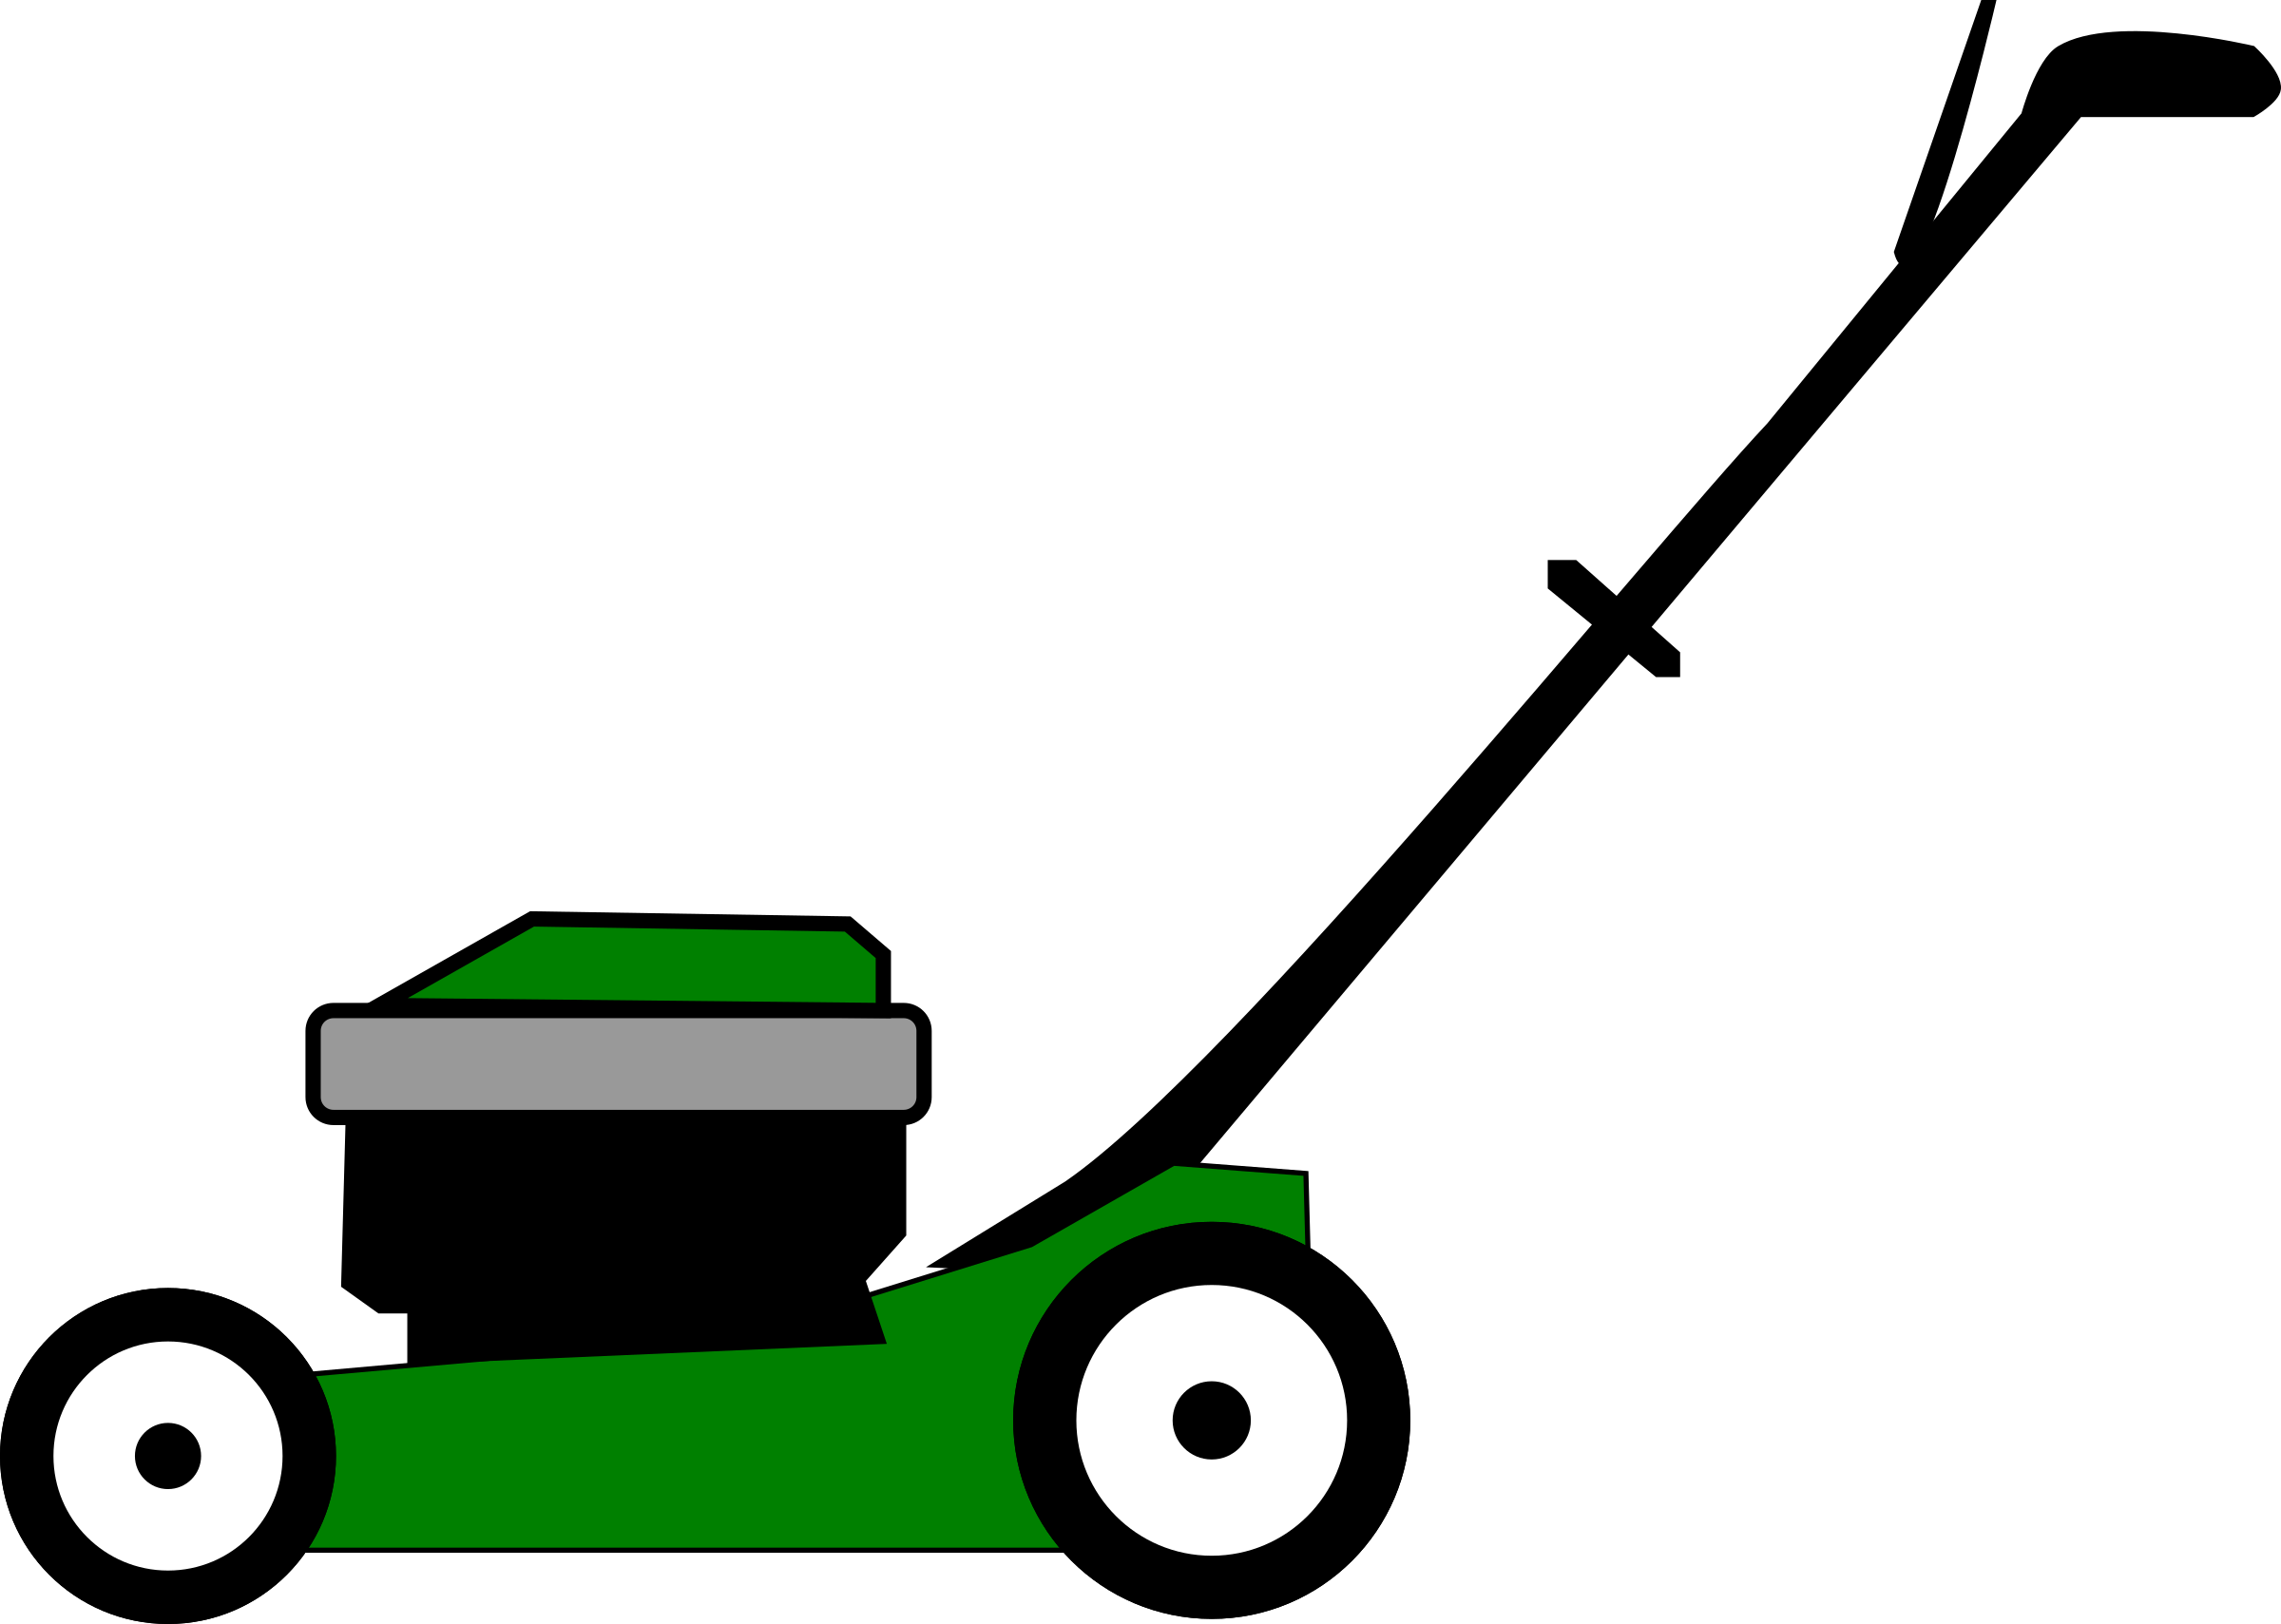 Clipart Lawn Mower - Tumundografico